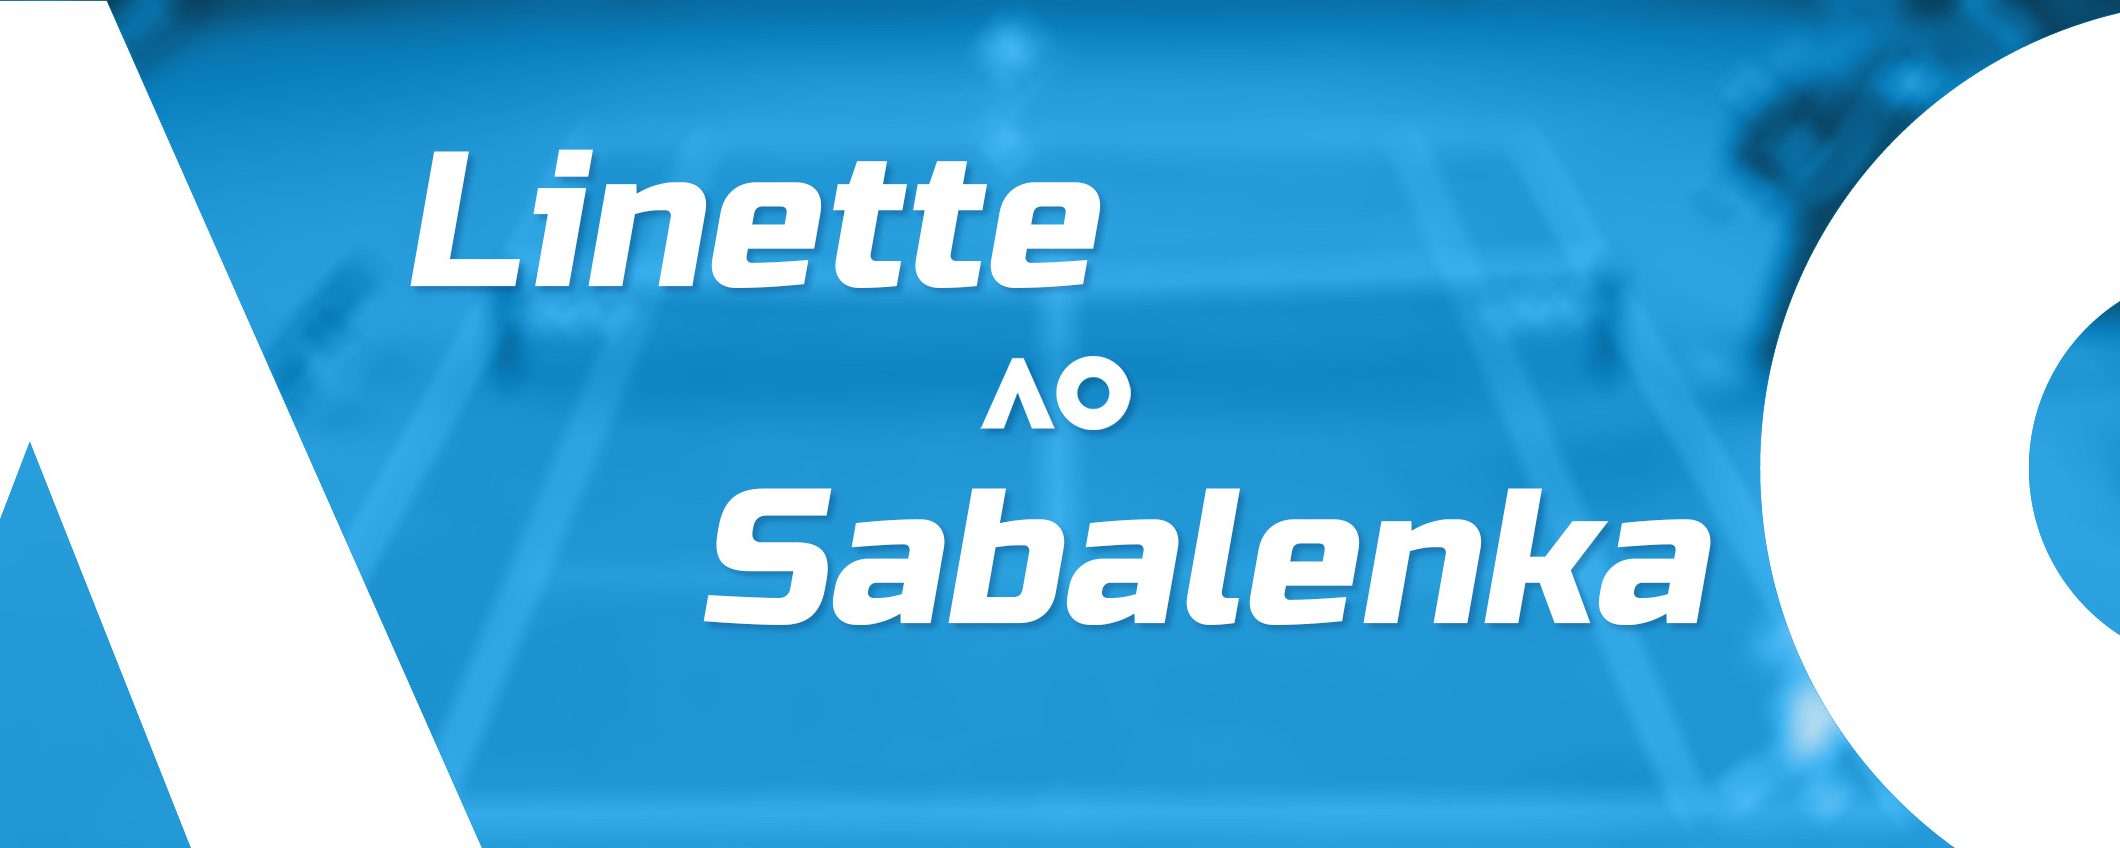 Linette-Sabalenka (Australian Open): come vederla in streaming